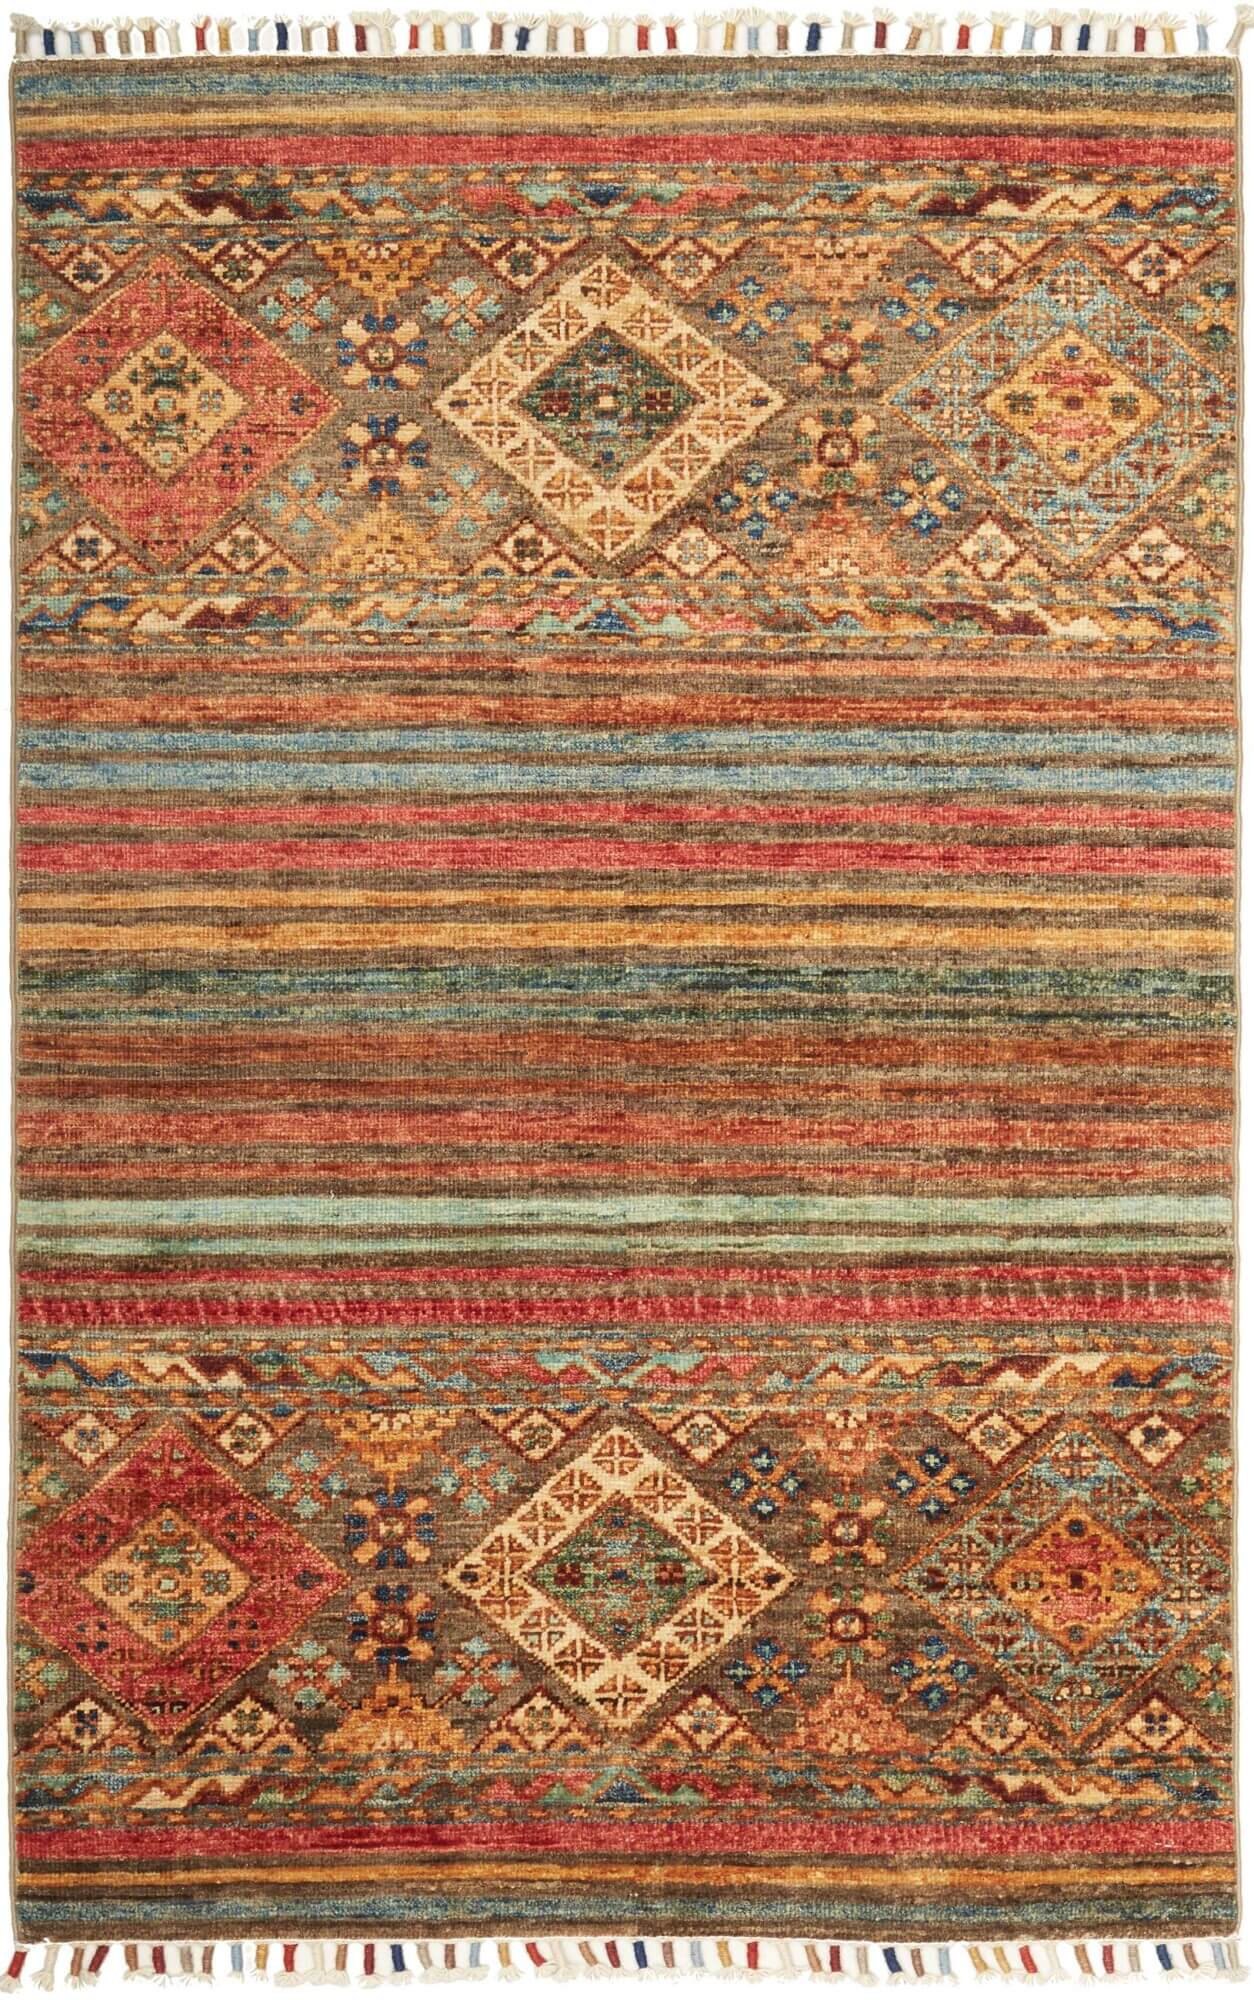 Afghan-Teppich Rubin small, handgeknüpft aus Schurwolle, 079 x 124 cm, mehrfarbig, Draufsicht